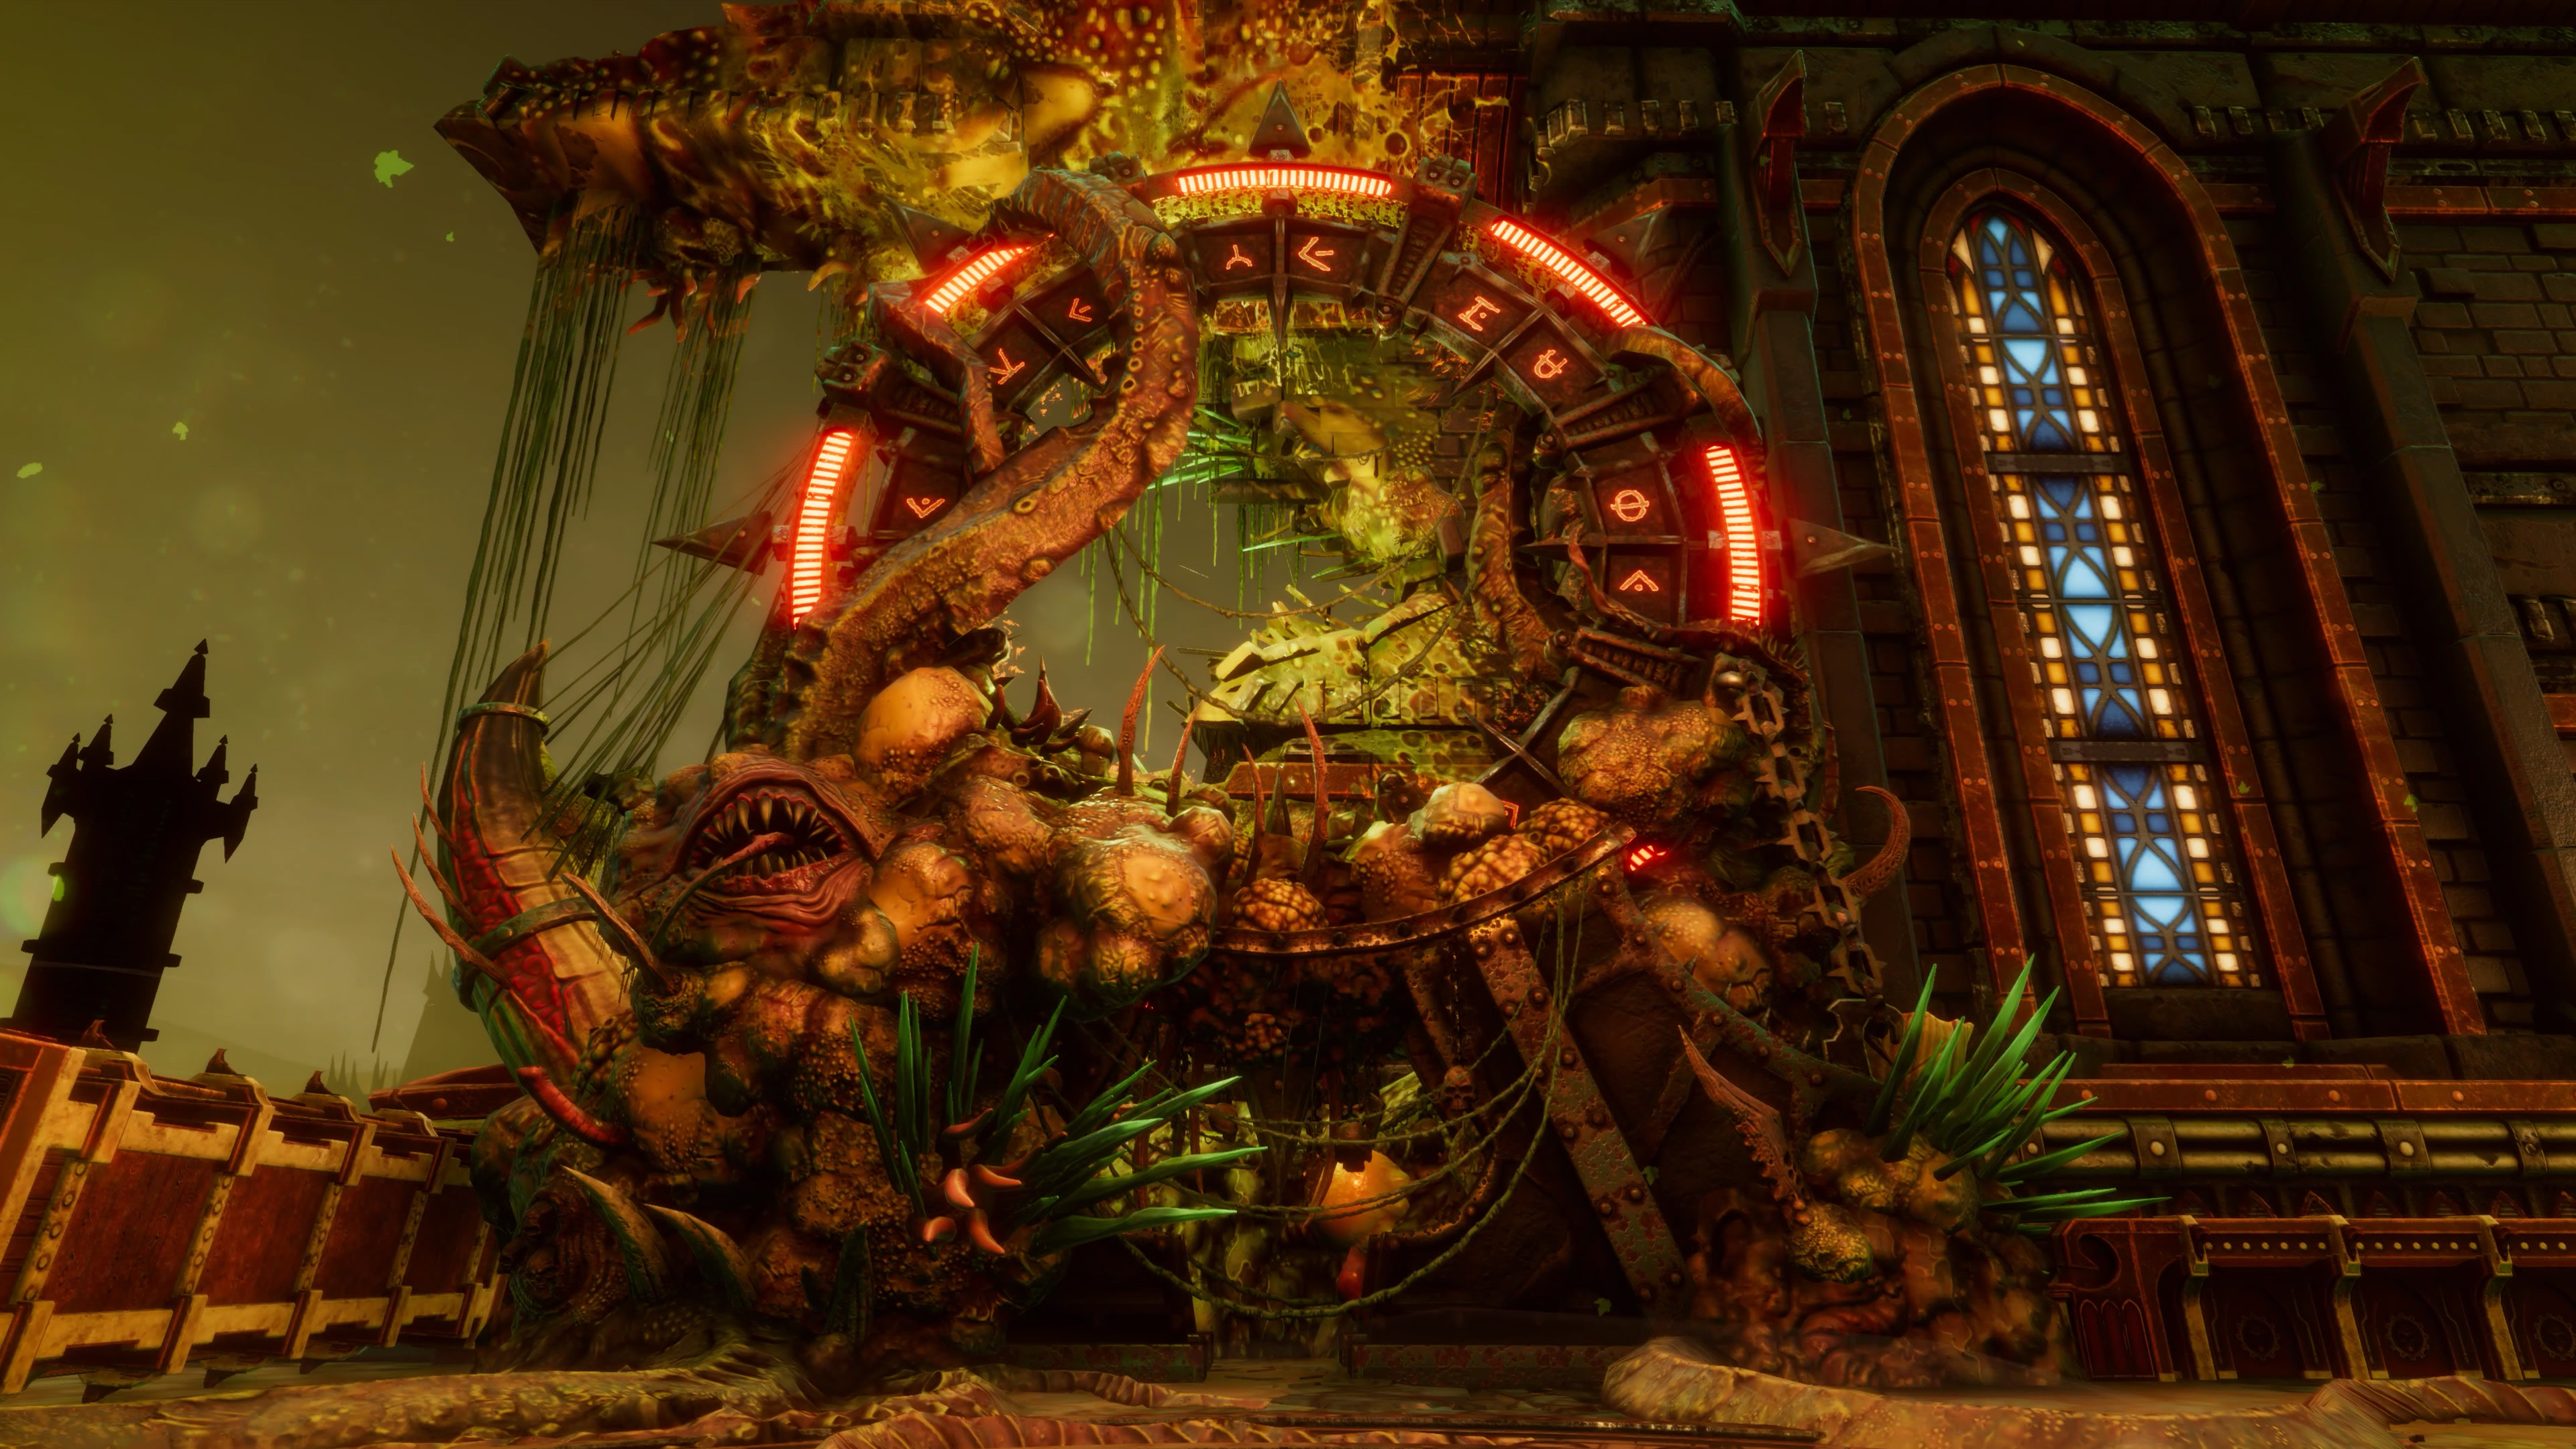 Laden Sie Warhammer 40 000: Chaos Gate Dämonenjäger HD-Desktop-Hintergründe herunter